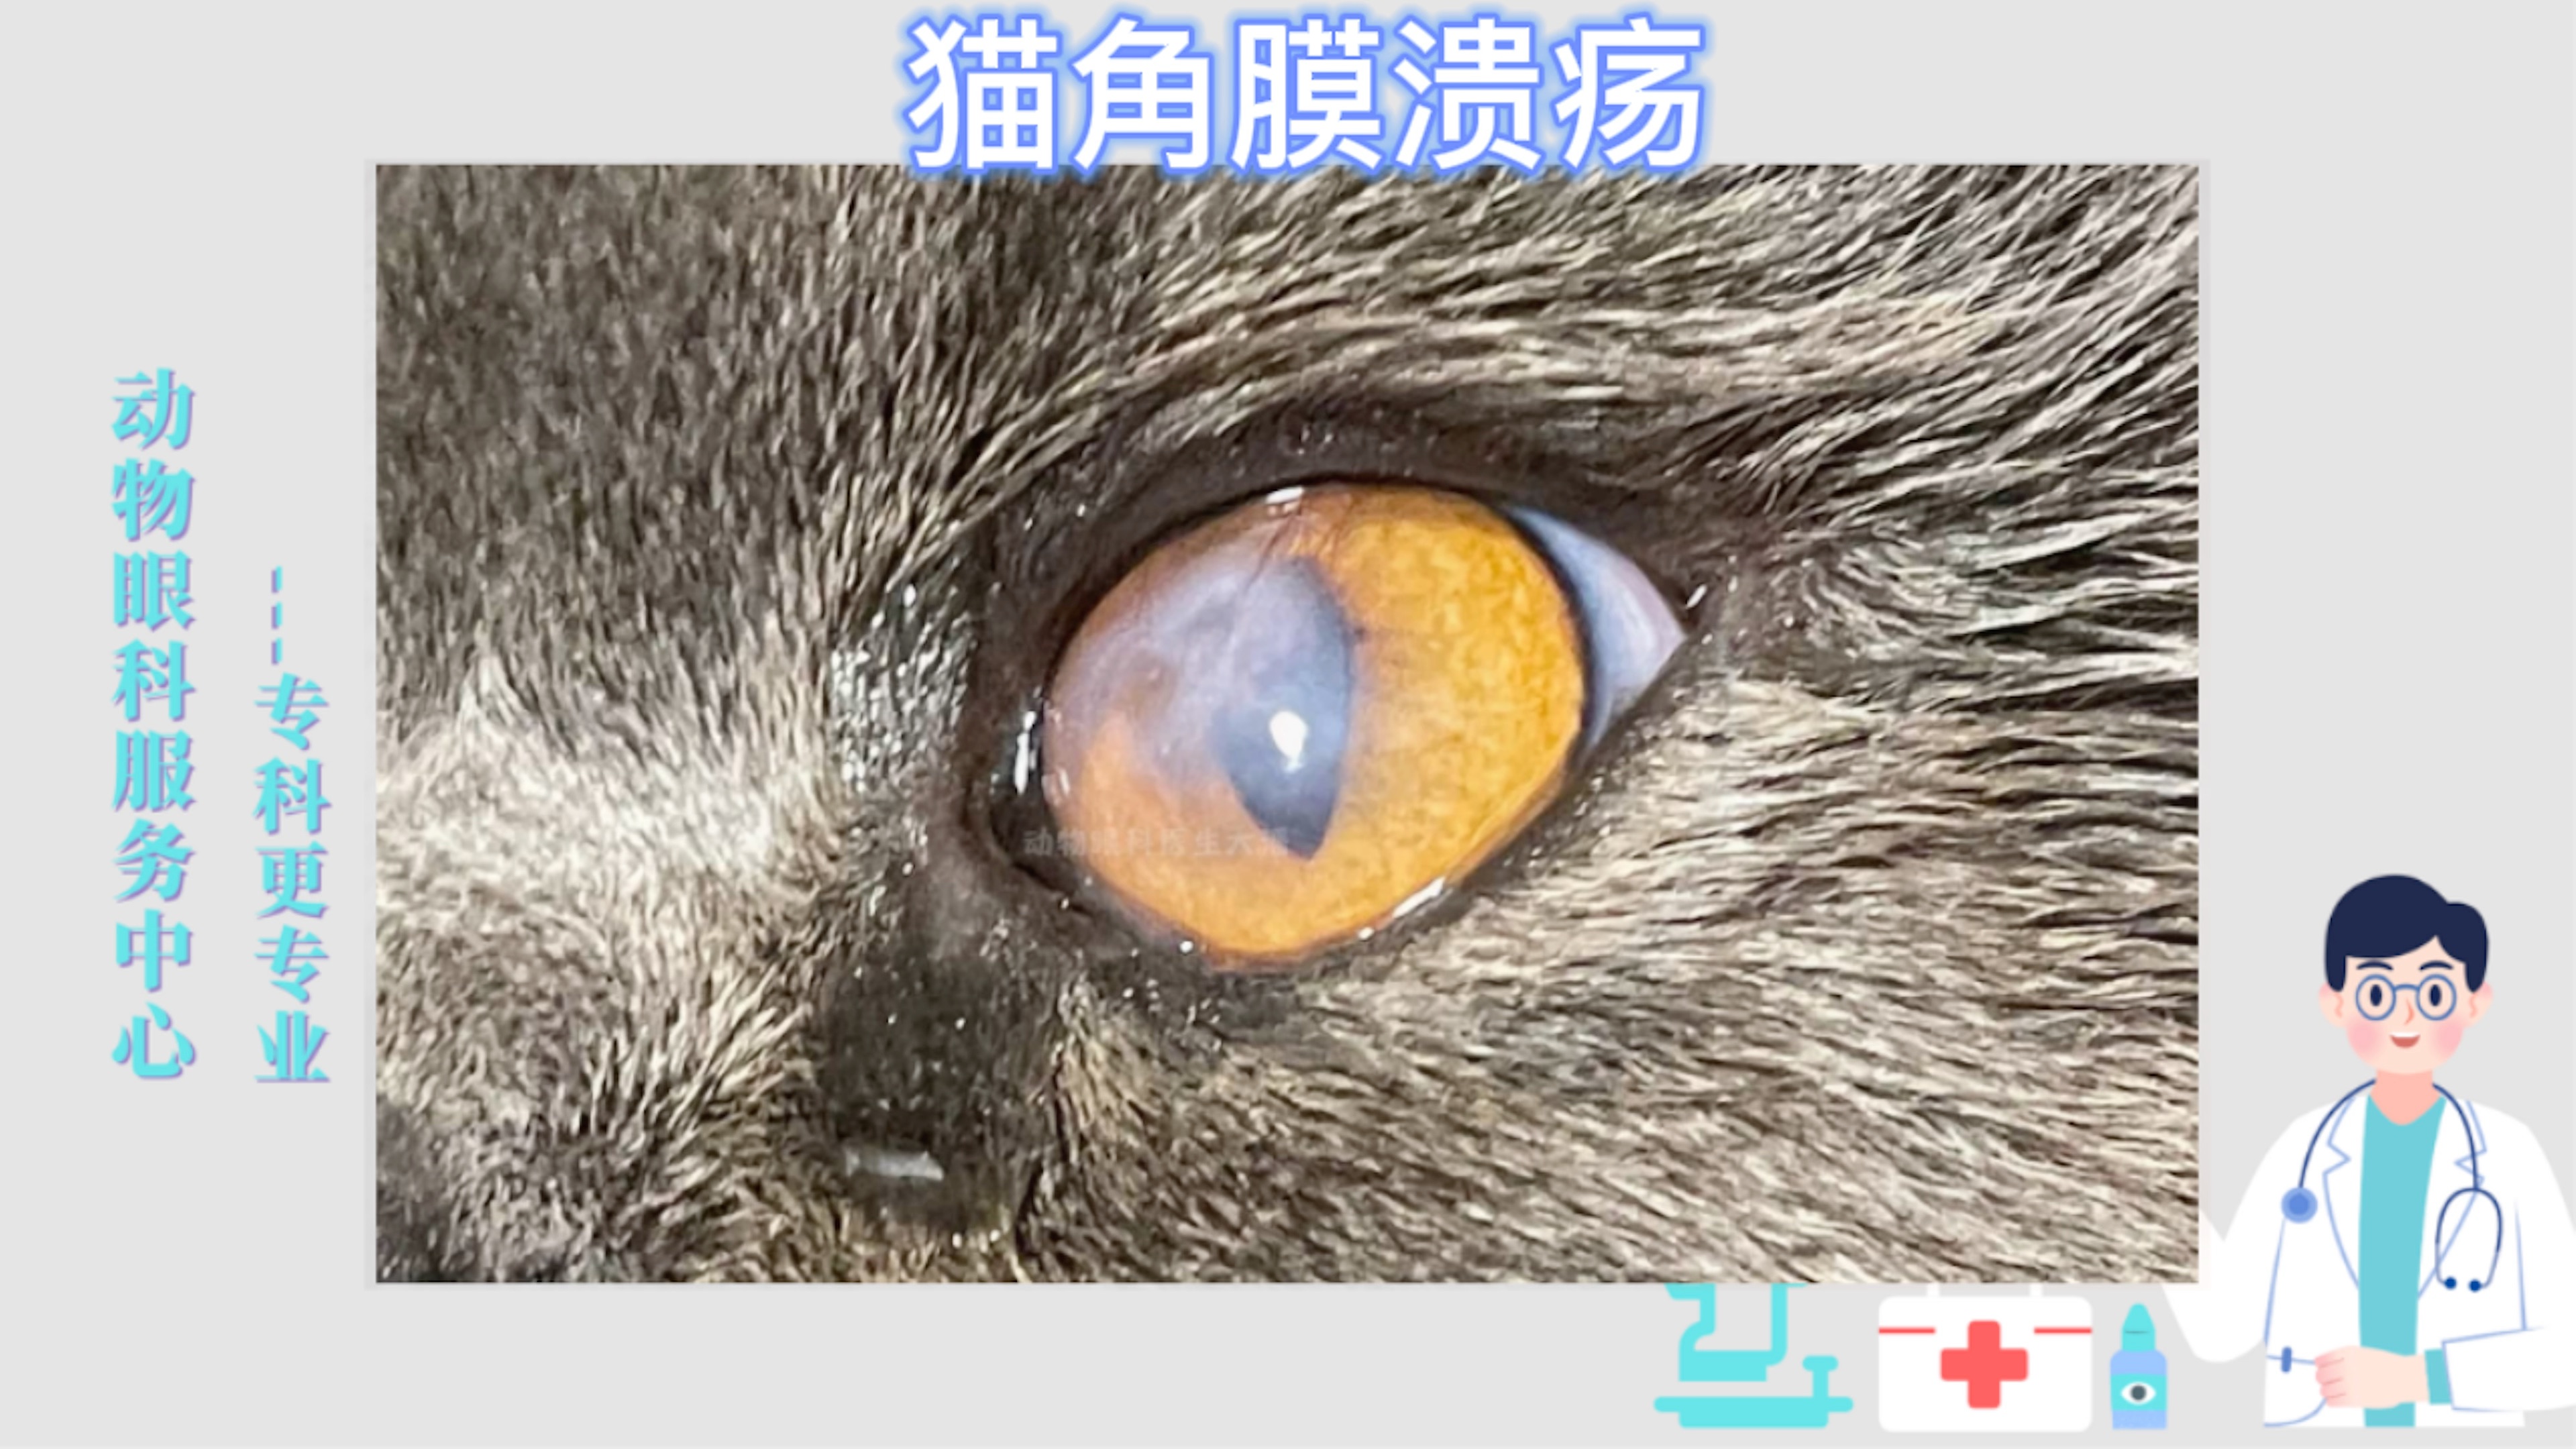 (青岛病例)猫眼睛有一层白膜,流泪,角膜有溃疡破损,保守治疗痊愈